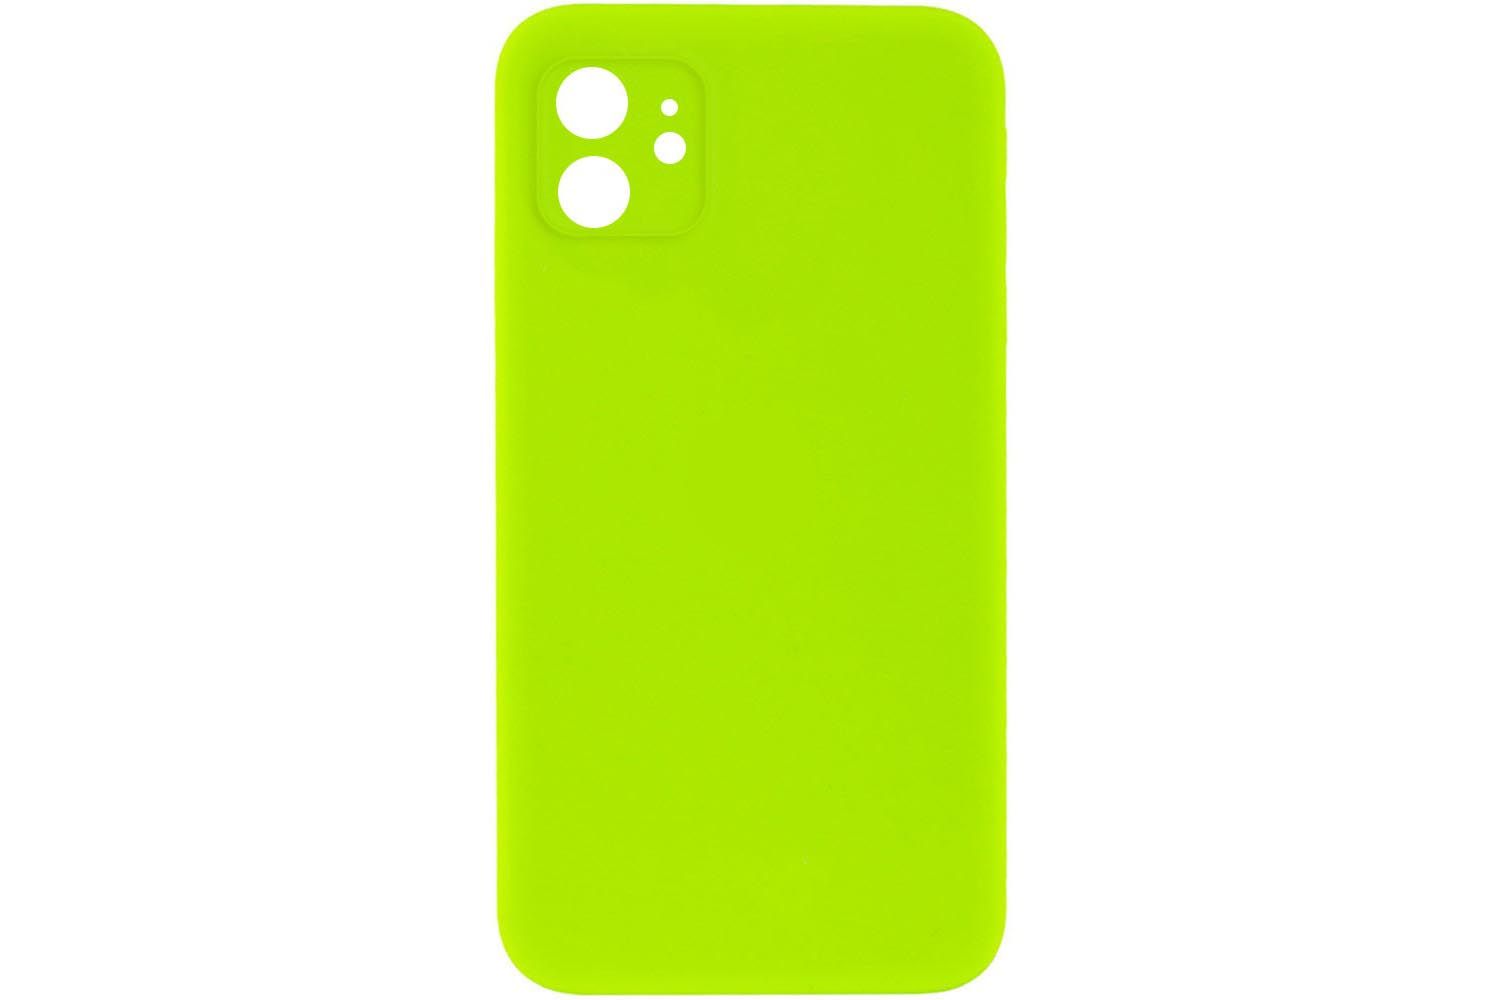 Чехол силиконовый с защитой камеры для Apple iPhone 11 (ярко - зеленый)